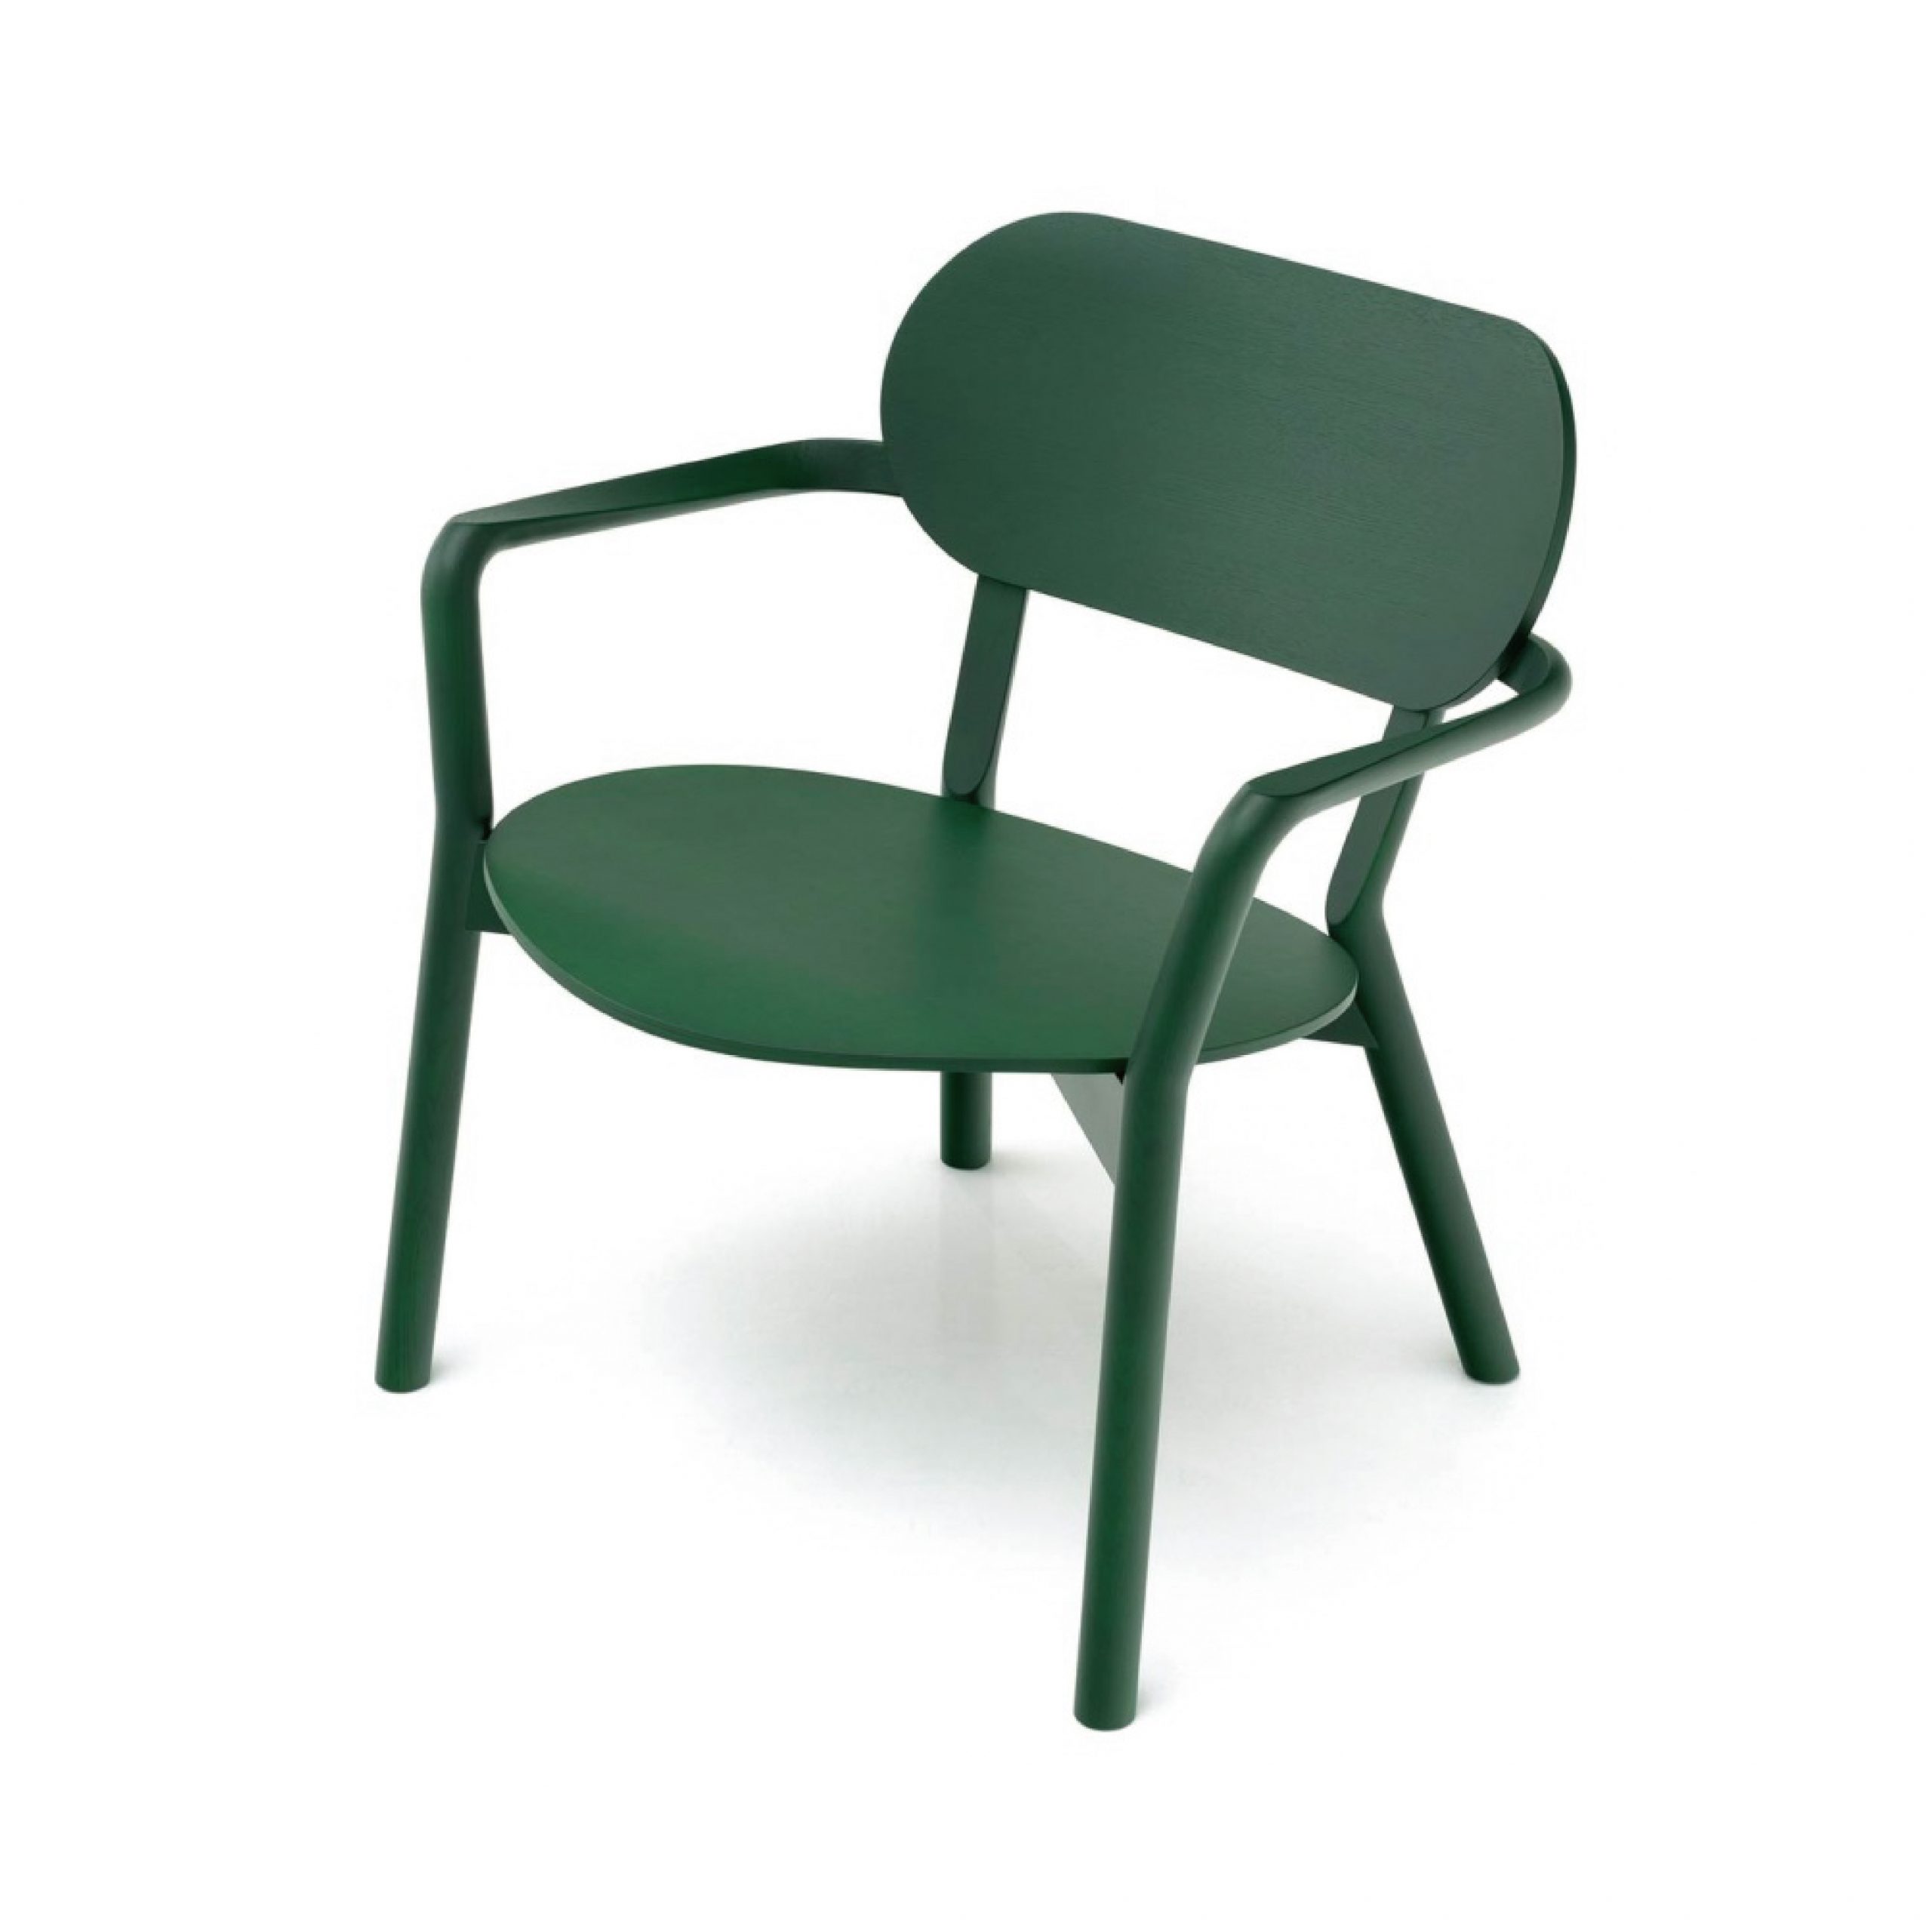 摩多家具MOTTO | Castor Low Chair 休閒椅